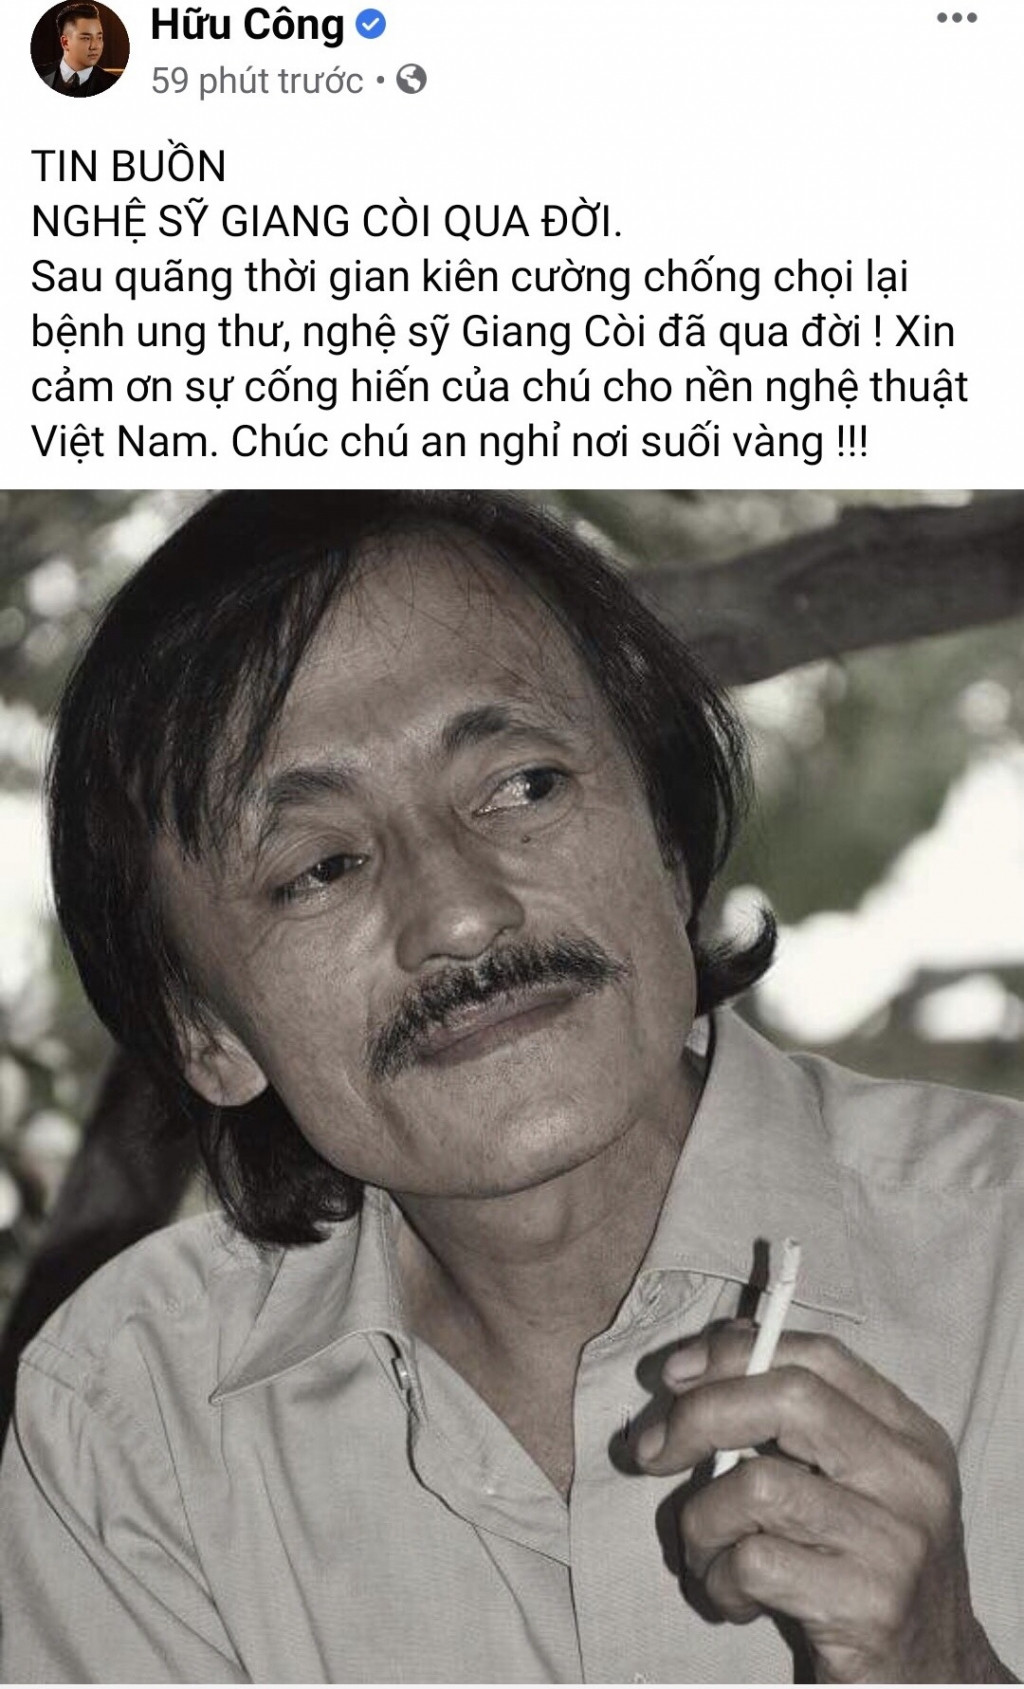 Nghệ sĩ Việt đồng loạt đăng trạng thái bày tỏ tiếc thương về sự ra đi của danh hài Giang Còi